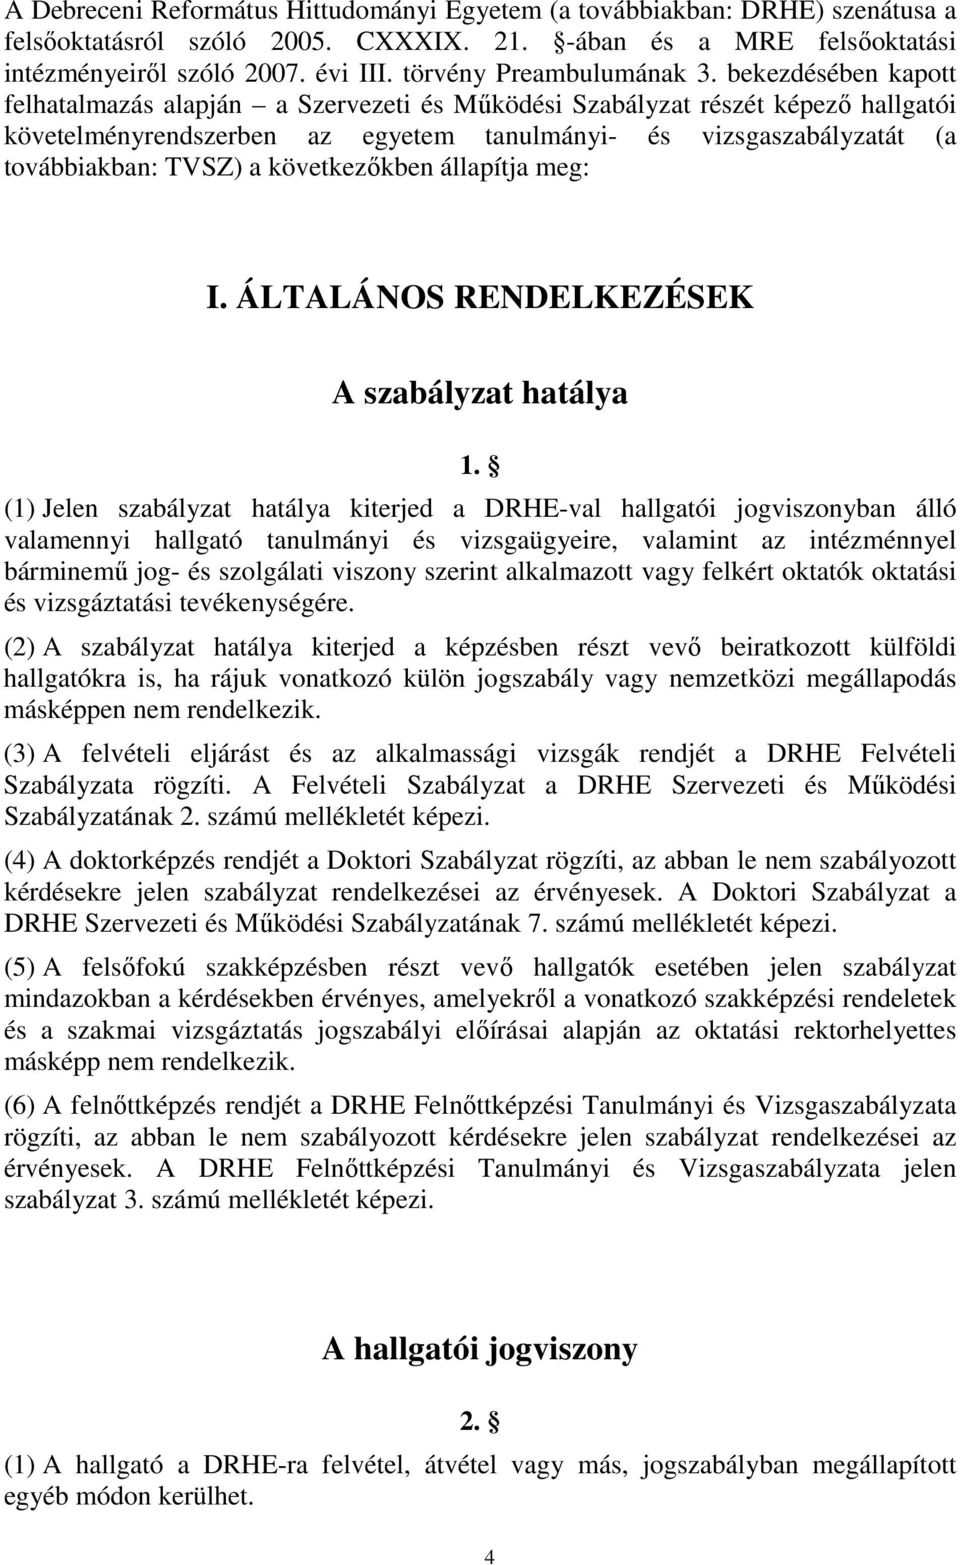 bekezdésében kapott felhatalmazás alapján a Szervezeti és Mőködési Szabályzat részét képezı hallgatói követelményrendszerben az egyetem tanulmányi- és vizsgaszabályzatát (a továbbiakban: TVSZ) a